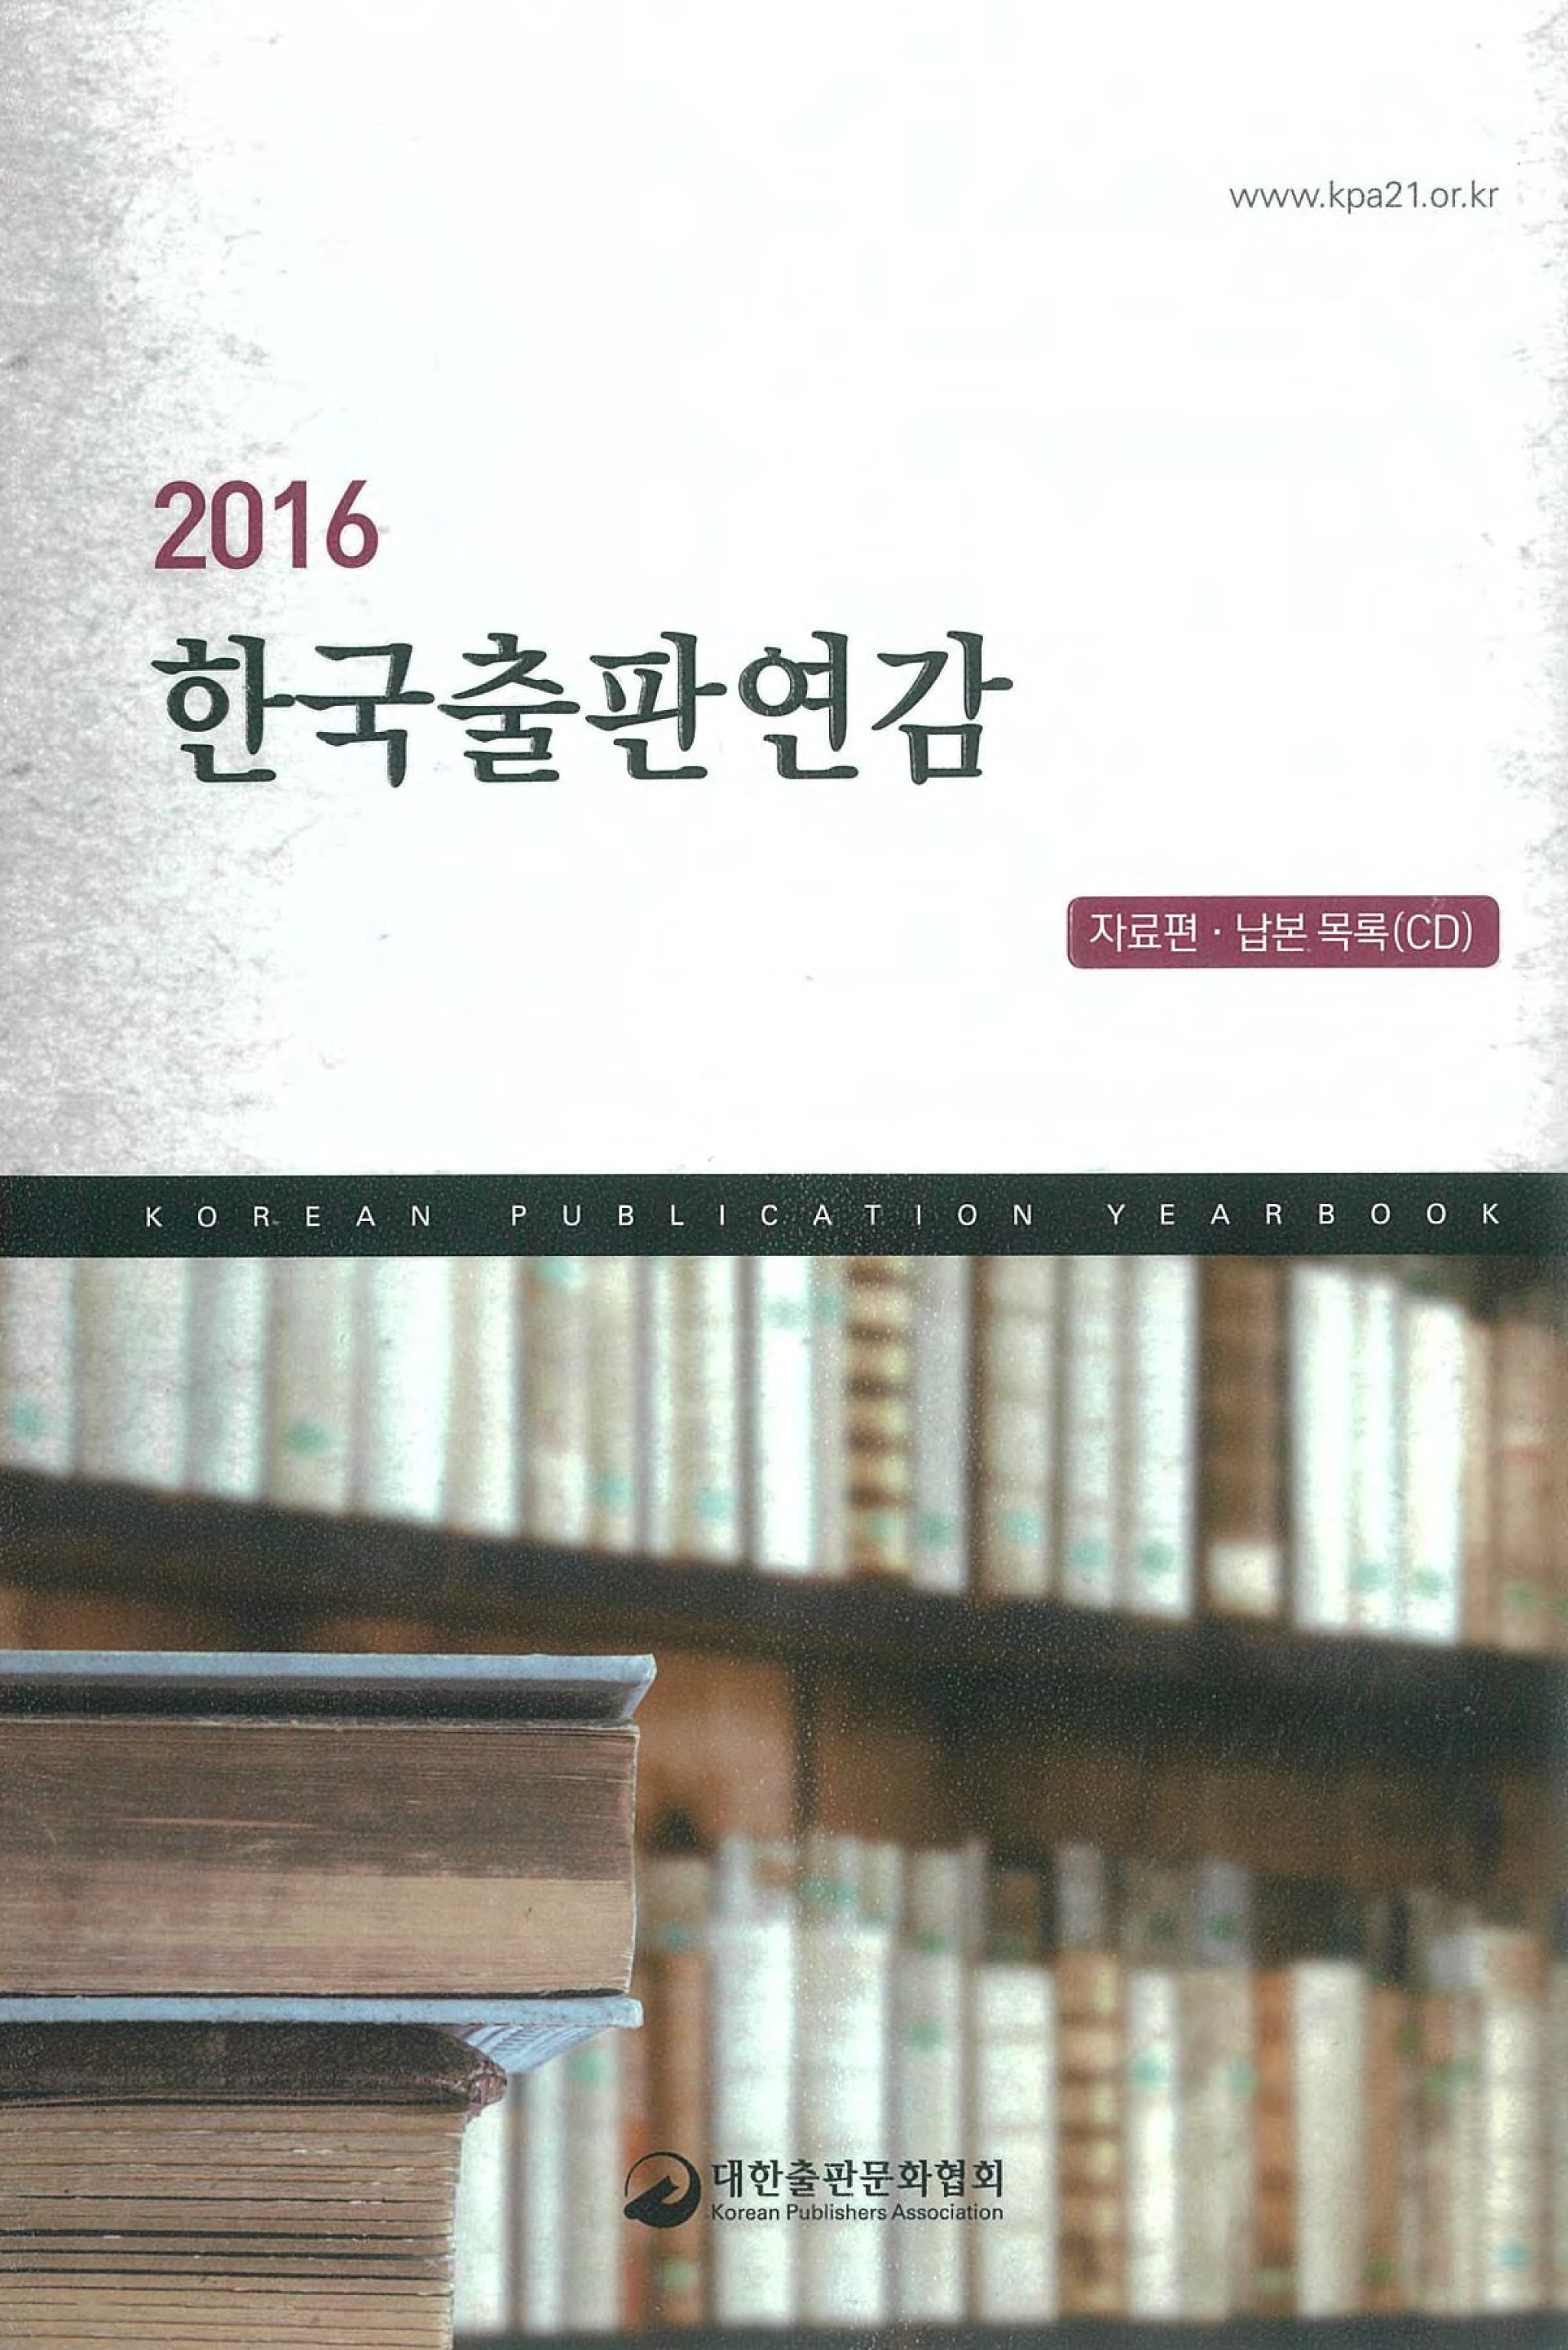 2016 한국출판연감